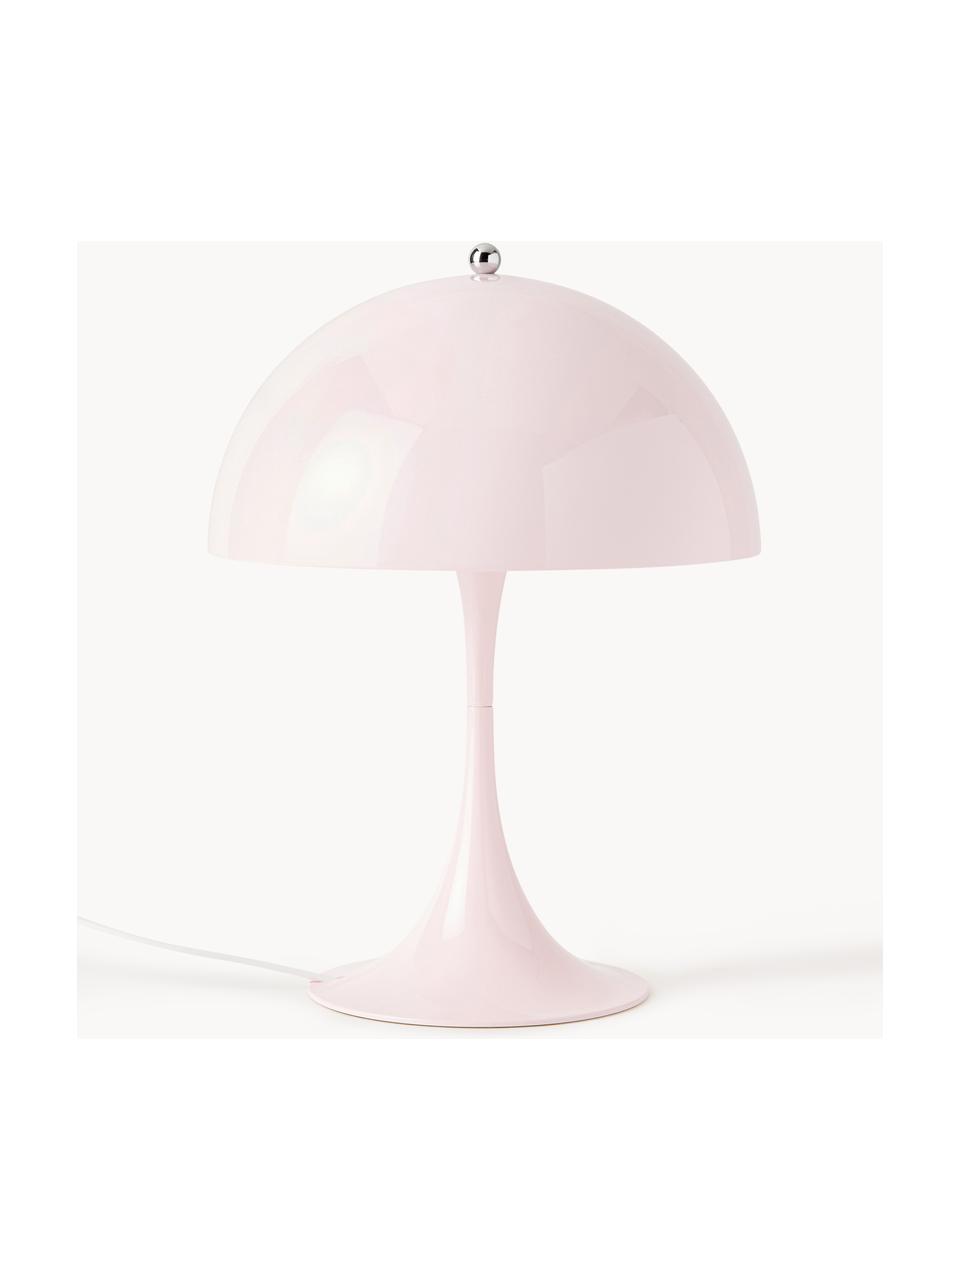 Lampa stołowa LED z funkcją przyciemniania Panthella, W 34 cm, Stelaż: aluminium powlekane, Jasnoróżowa stal, Ø 25 x 34 cm